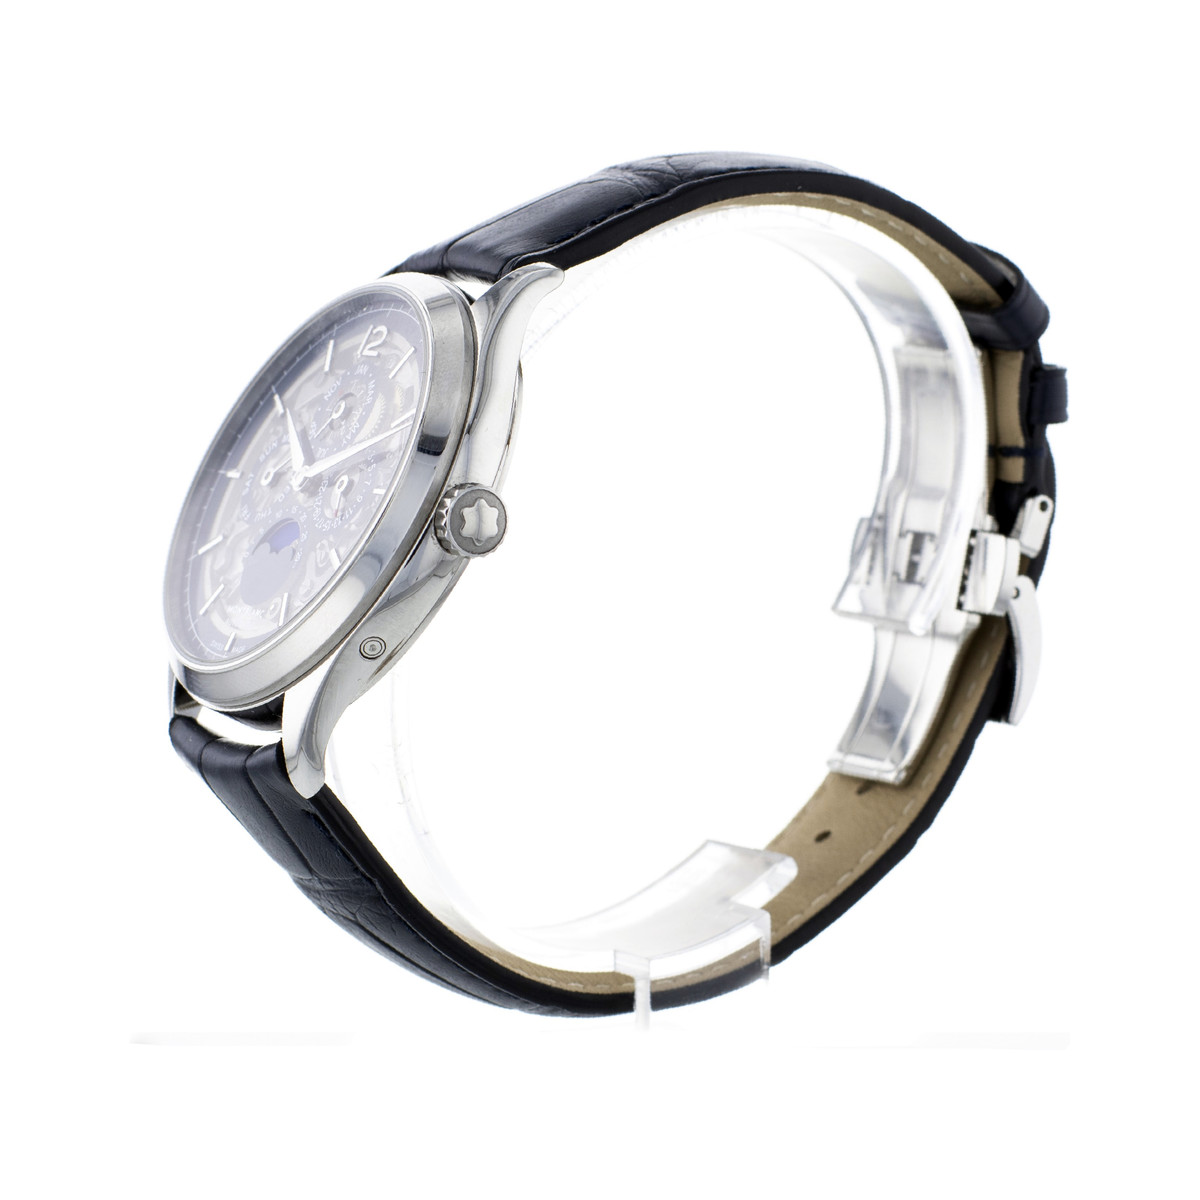 Montre d'occasion Montblanc Héritage QP homme automatique acier bracelet cuir noir - vue 2